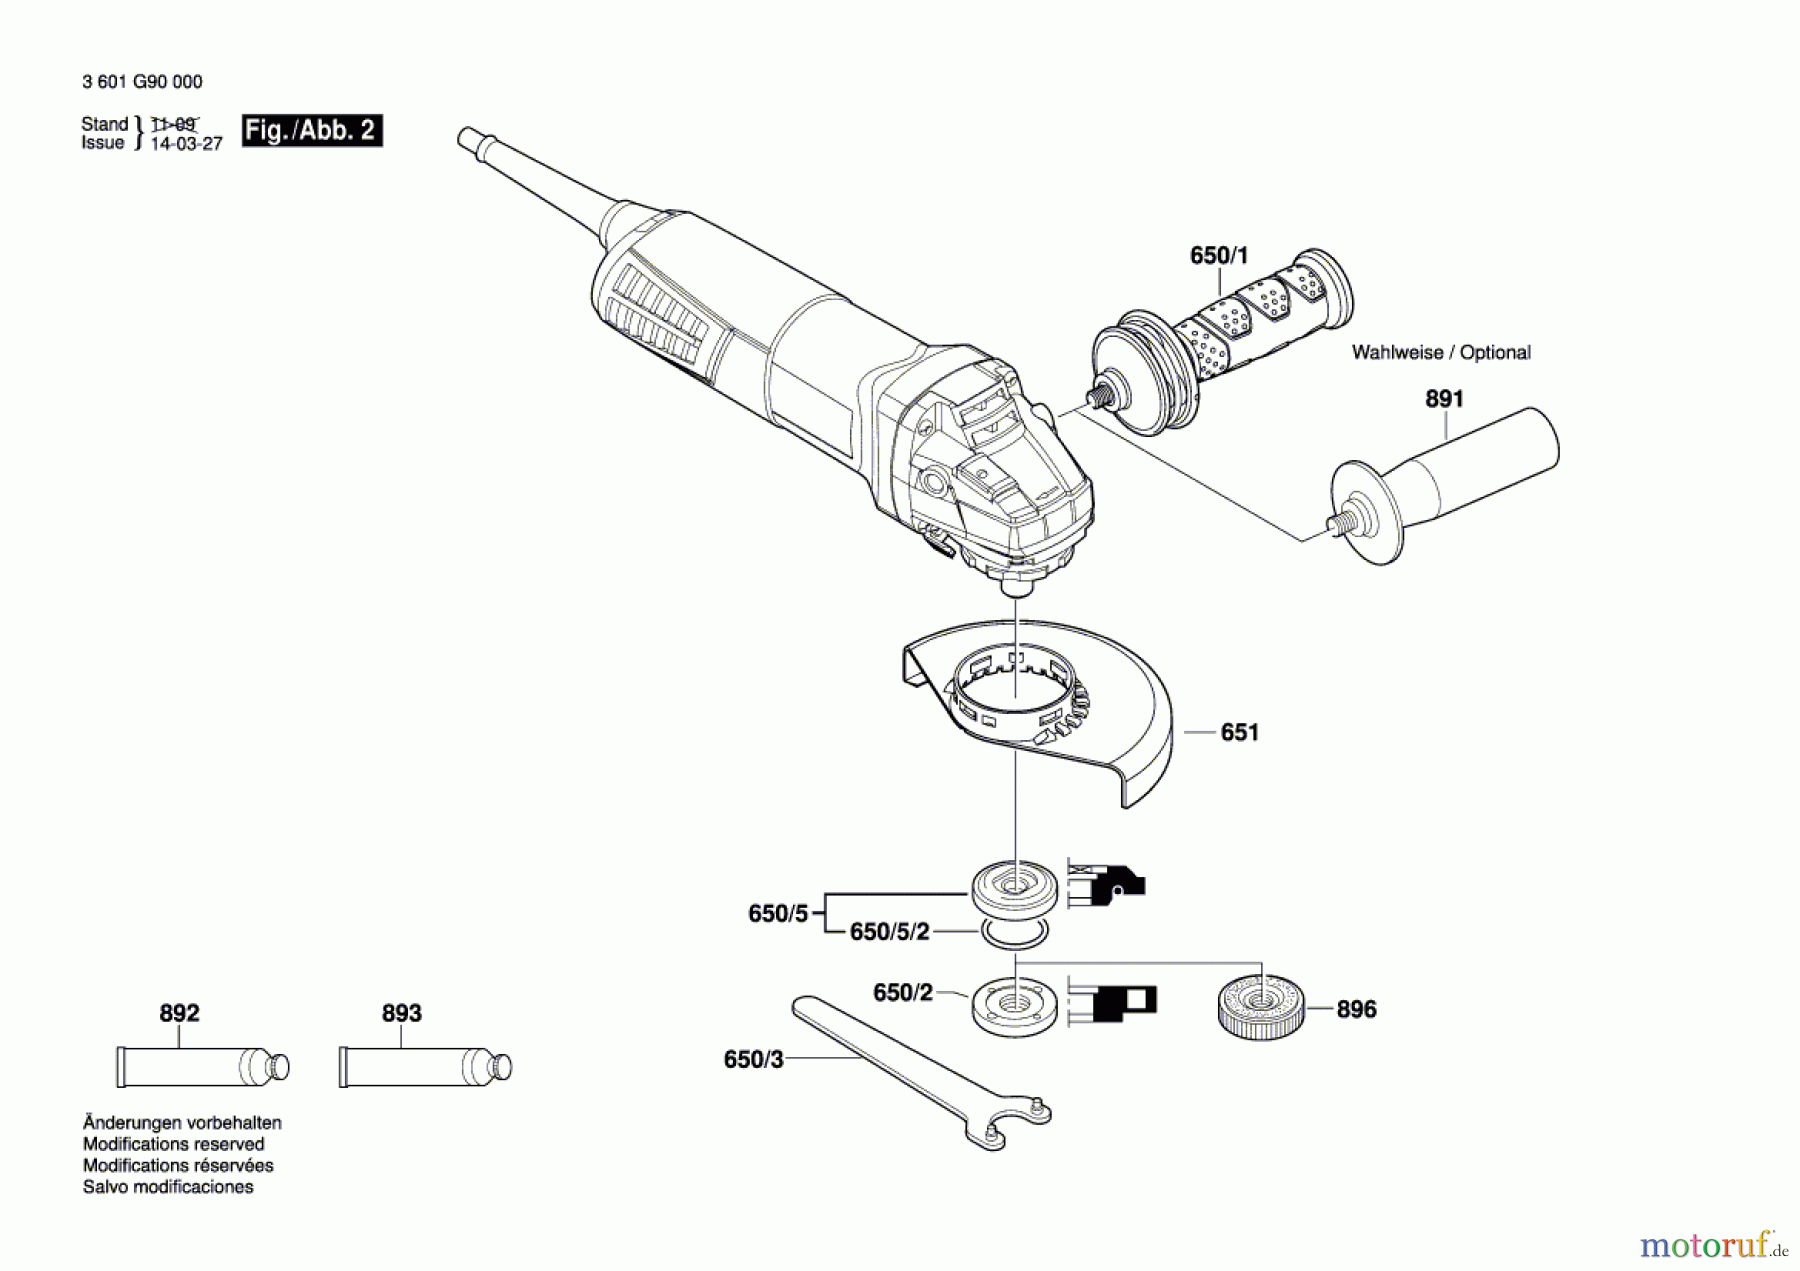  Bosch Werkzeug Winkelschleifer GWS 11-125 Seite 2